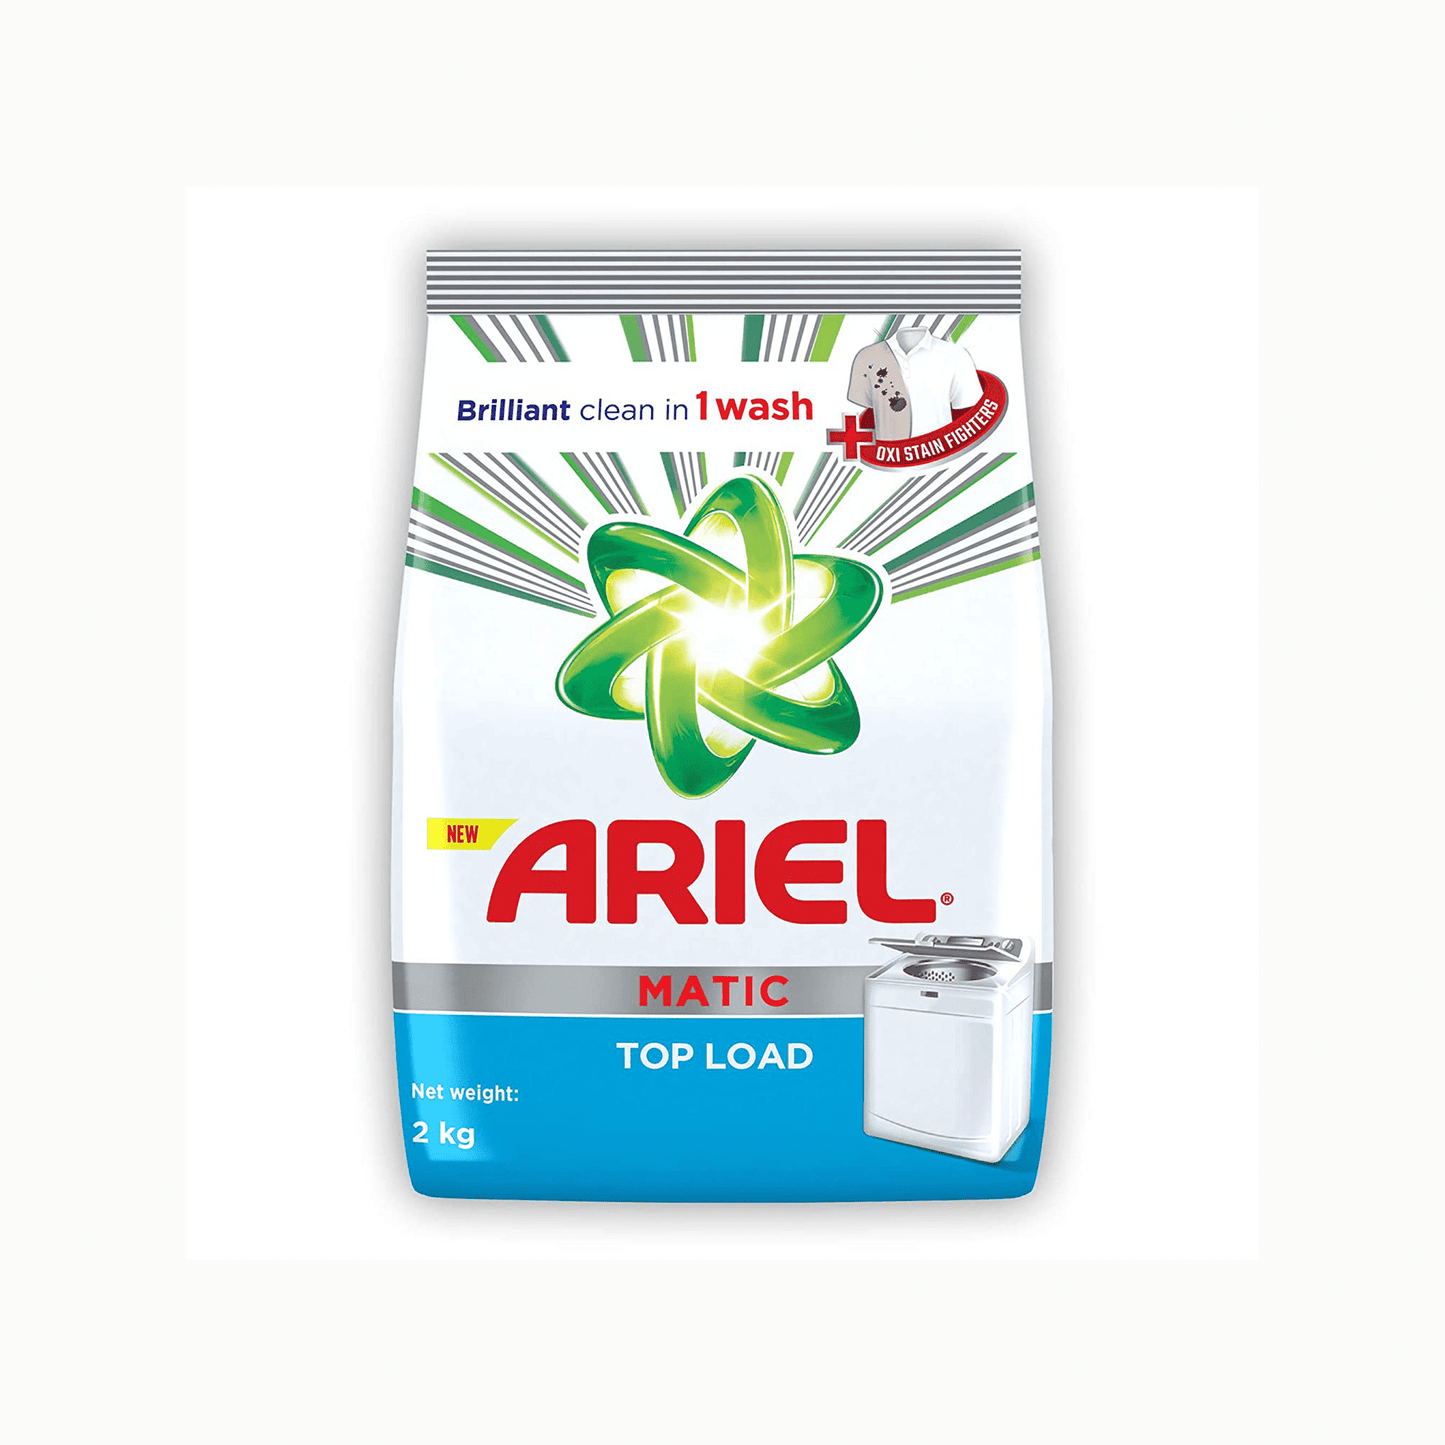 Ariel Matic Top Load Detergent Powder.